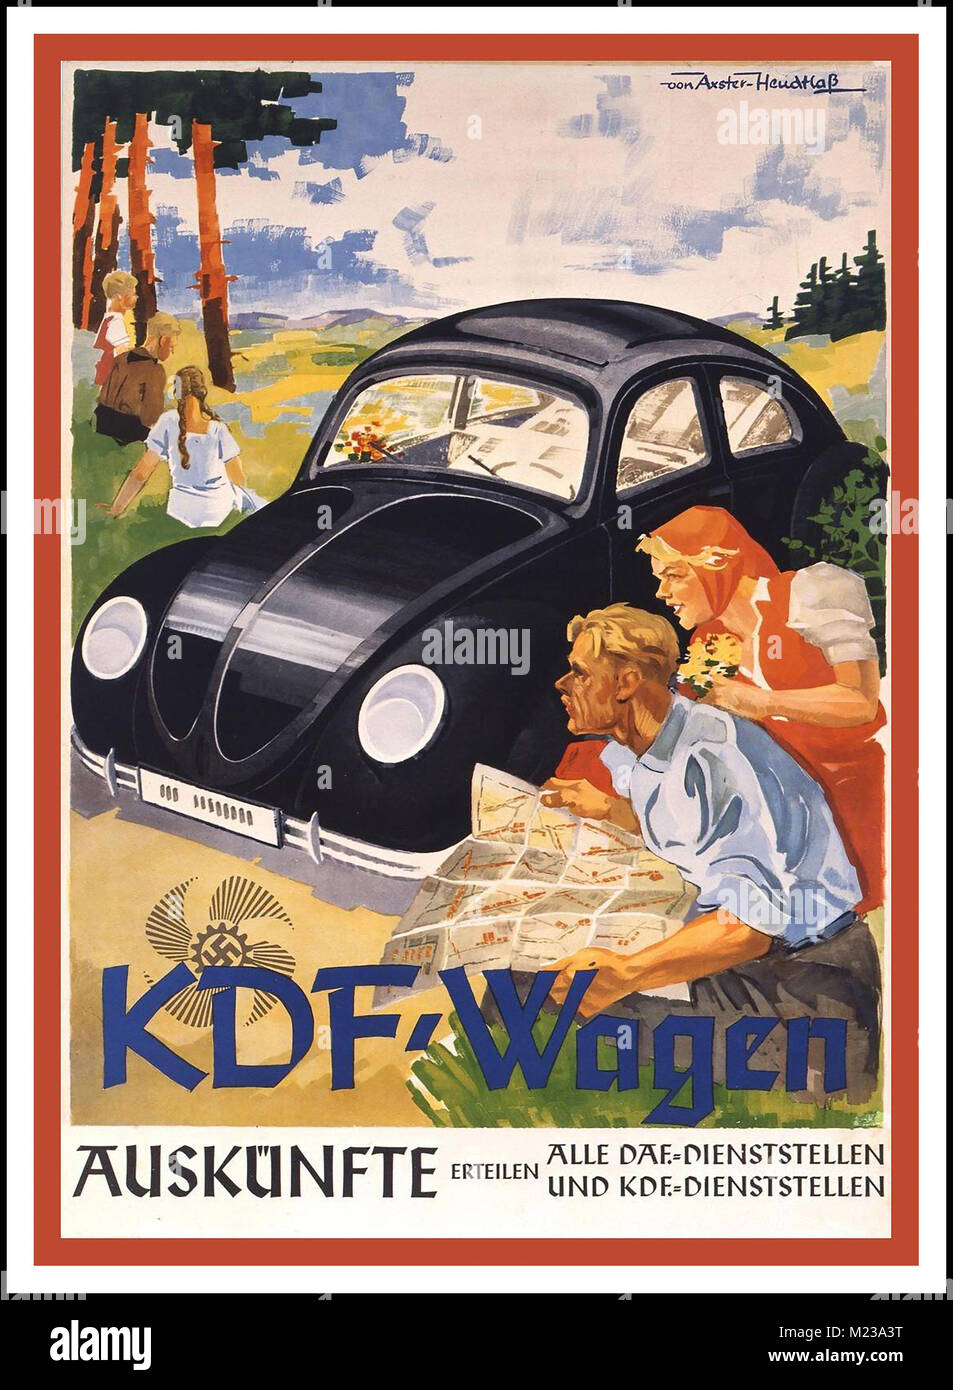 KDF WAGEN VINTAGE affiche des années 1930 KDF WAGEN (force par joie) VOLKSWAGEN PEOPLE’S CAR 1938 Allemagne nazie publicité pour la Volkswagen, produite par le Syndicat nazi “Front du travail allemand” avec la famille allemande idéaliste aryenne illustrée dans la situation des halcyons et l'emblème de Swastika Banque D'Images